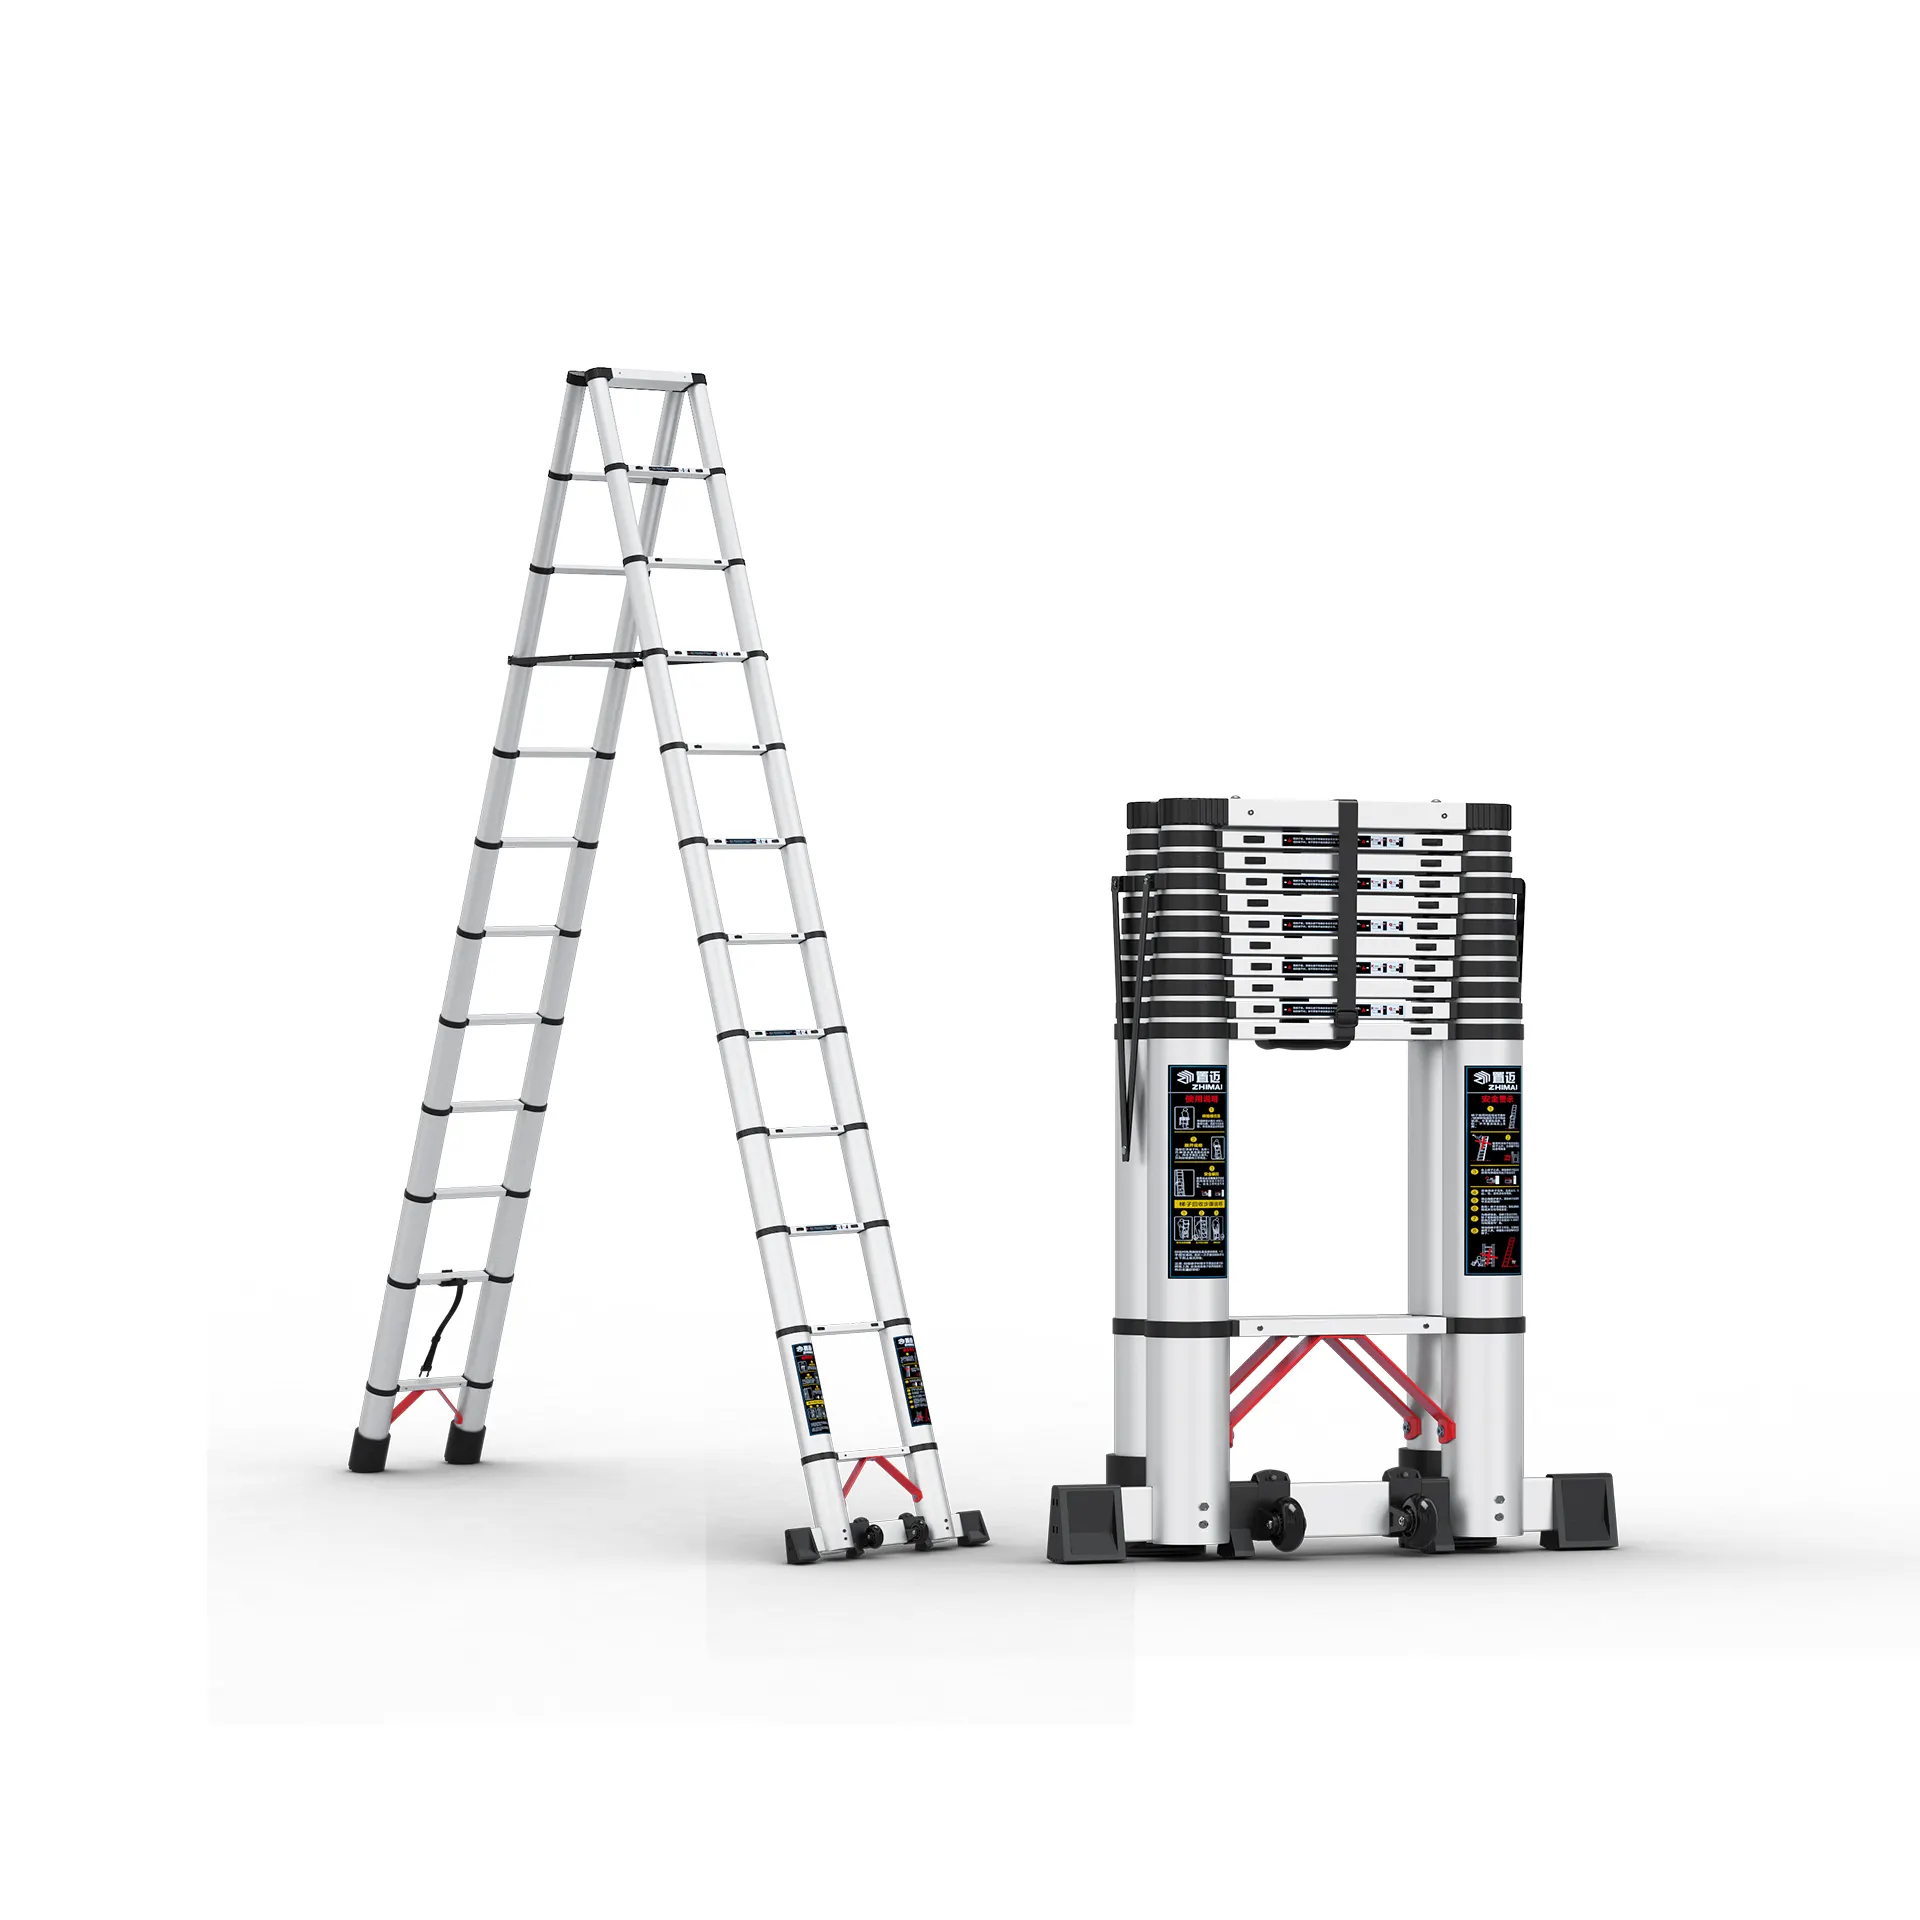 Выдвижная лестница Многофункциональное использование алюминия для носки в помещении и ежедневного использования работы лестница телескопическая 4 ступенчатая лестница